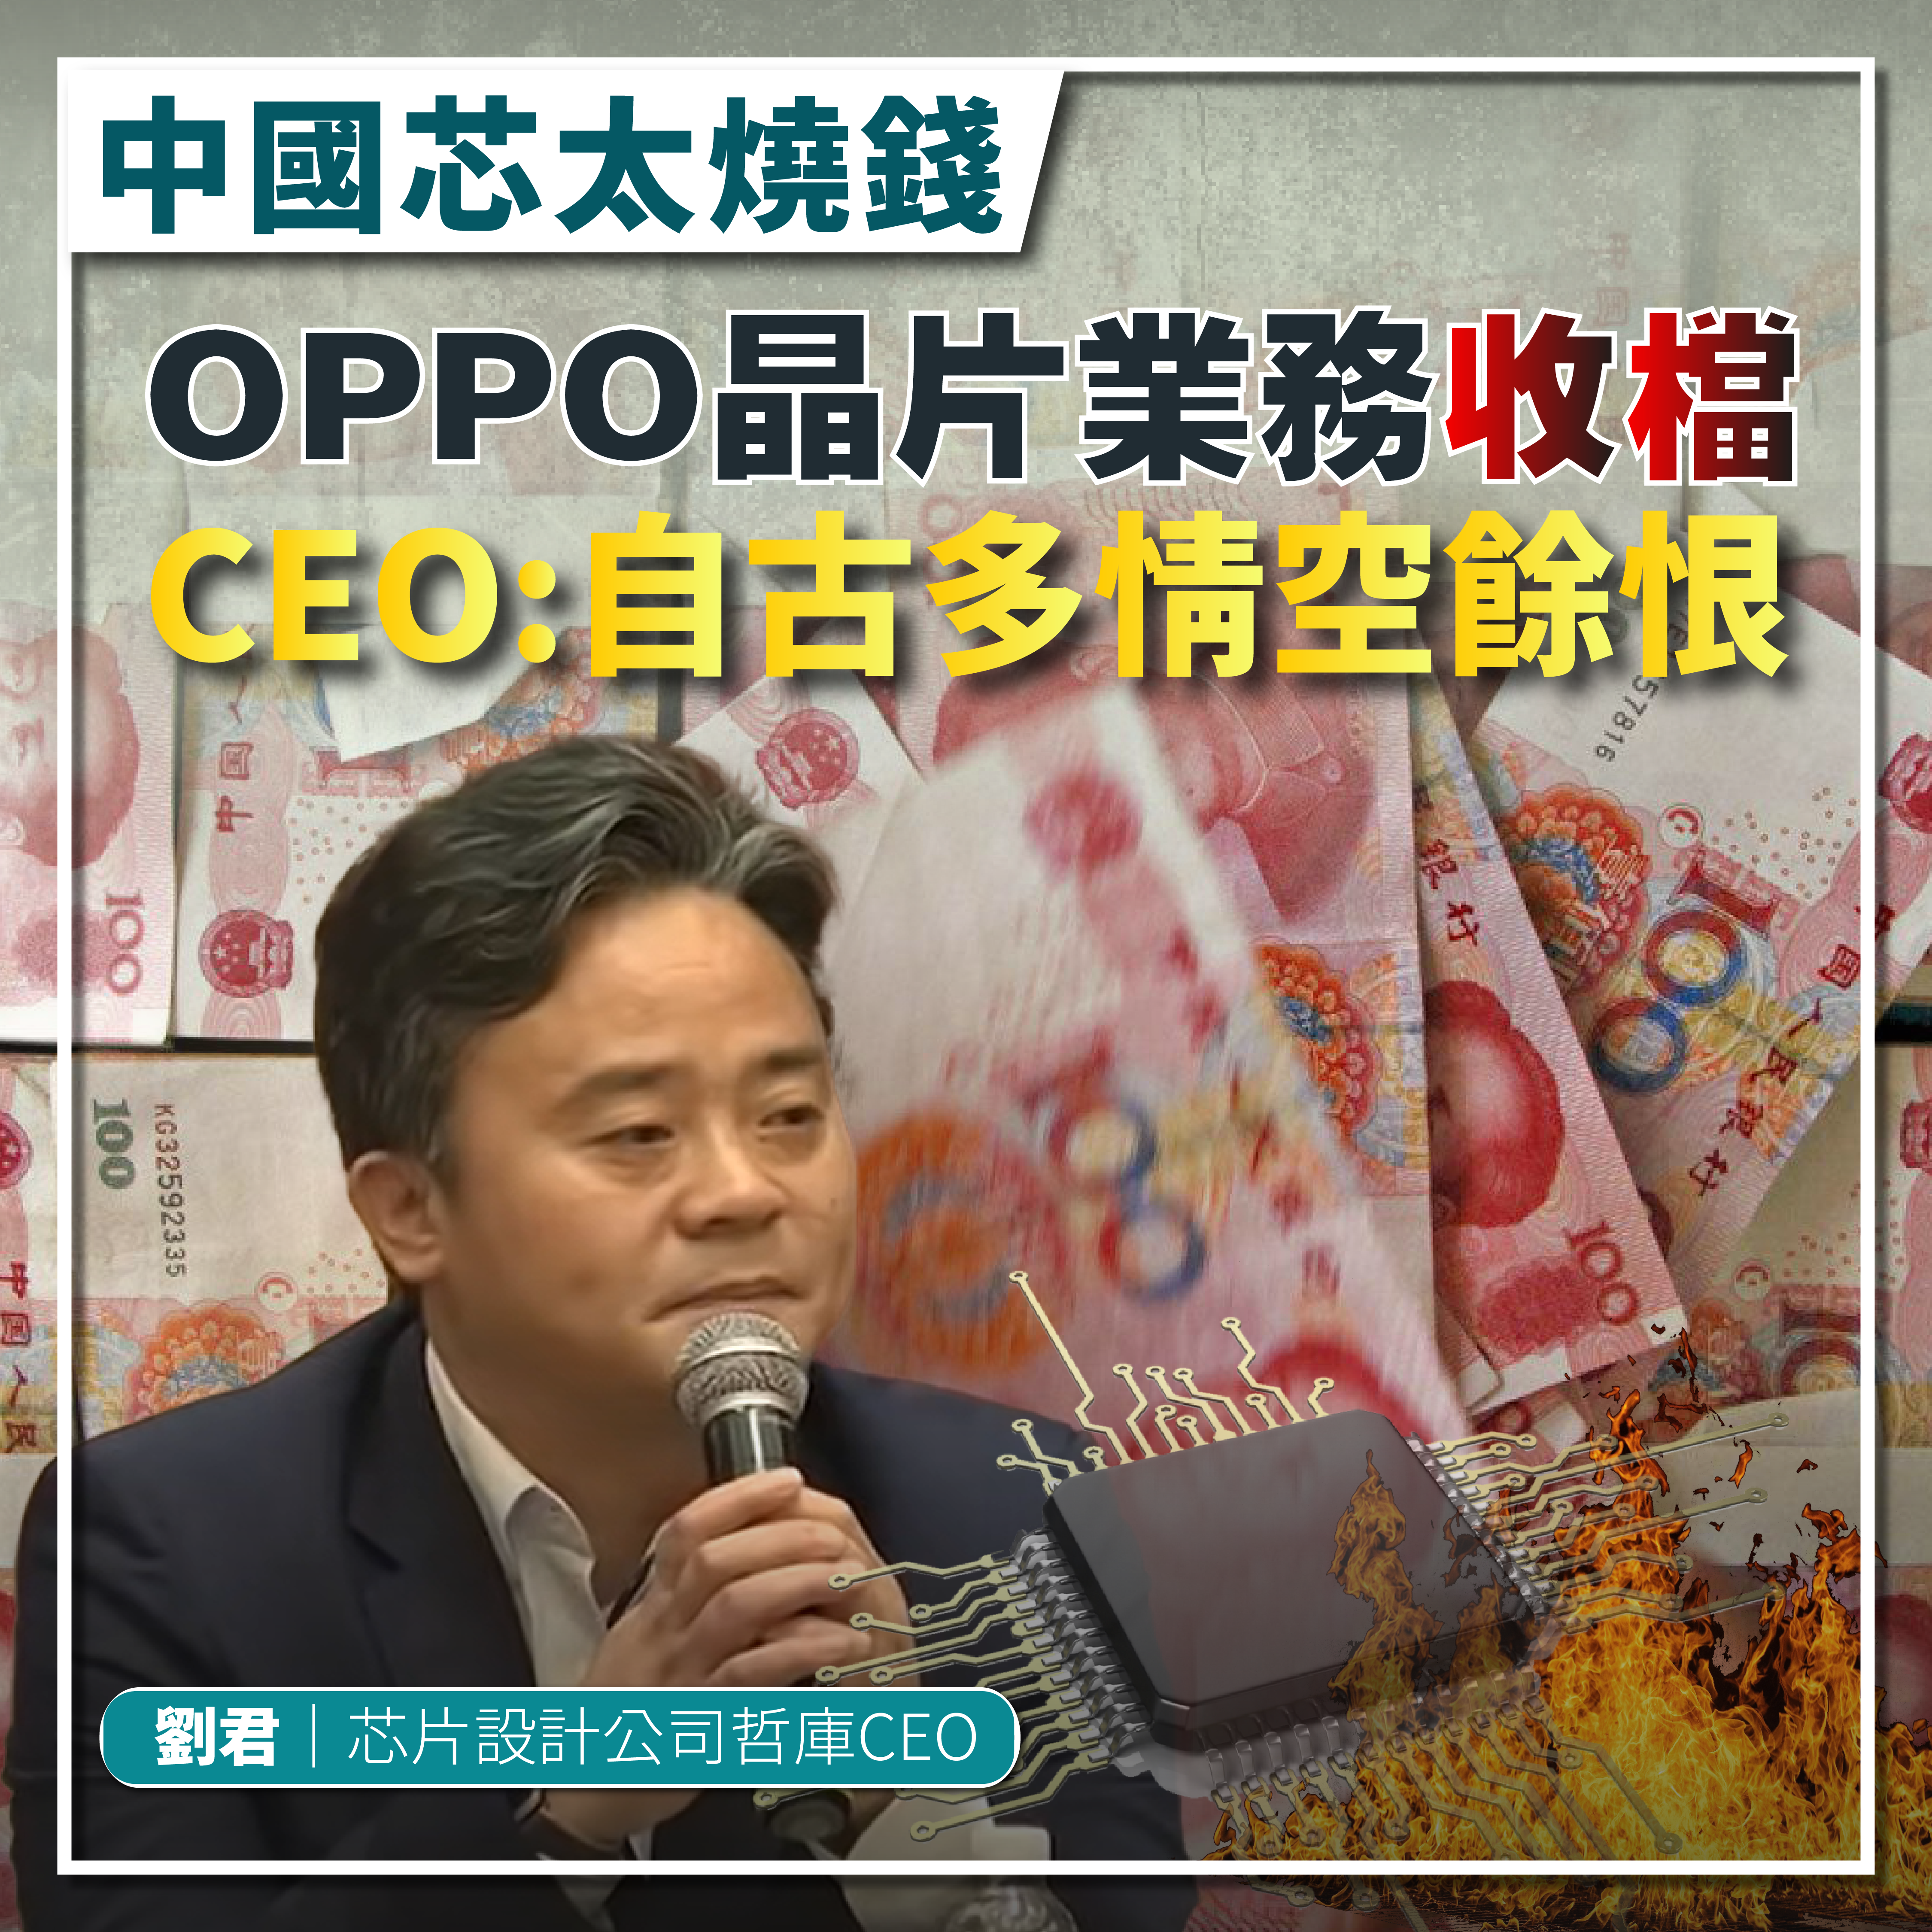 Oppo-晶片-芯片-中國芯-哲庫-Zeku-CEO-劉君